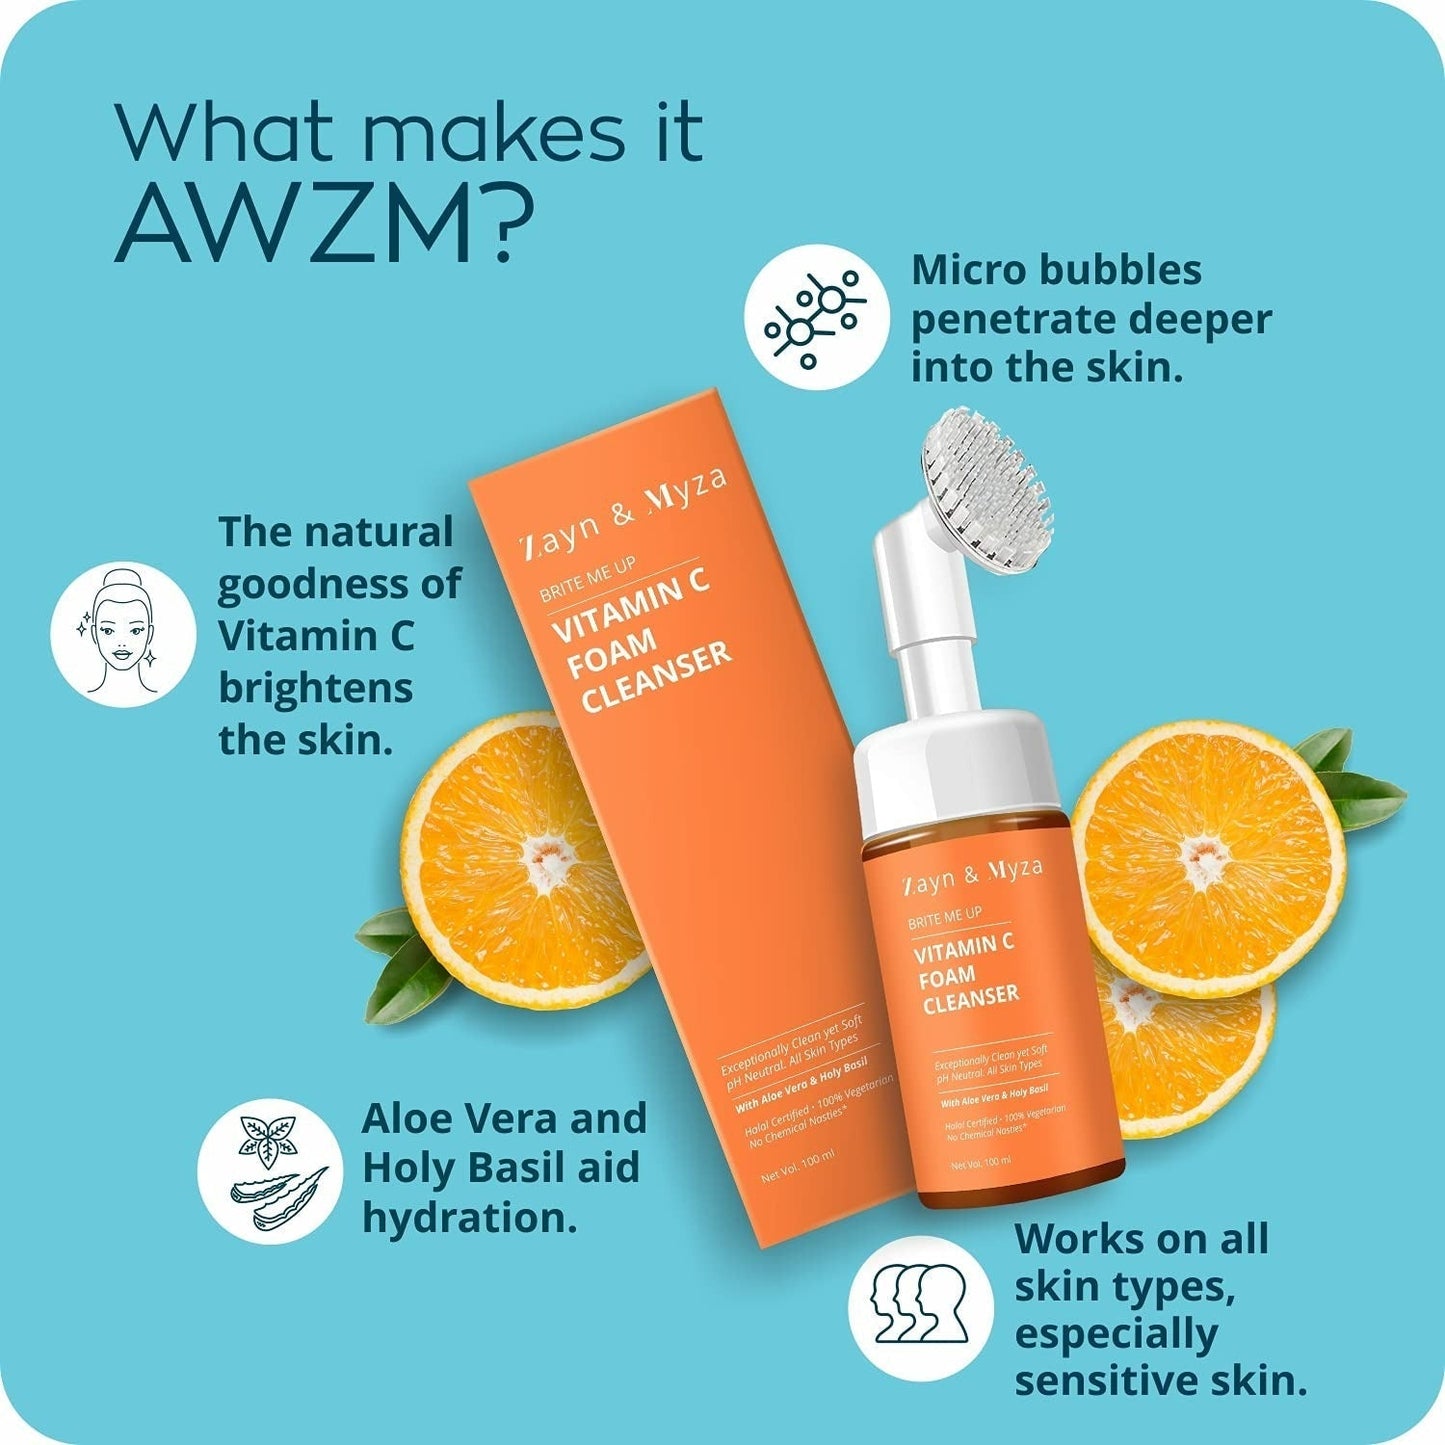 Zayn & Myza vitamin C Foaming Face Wash